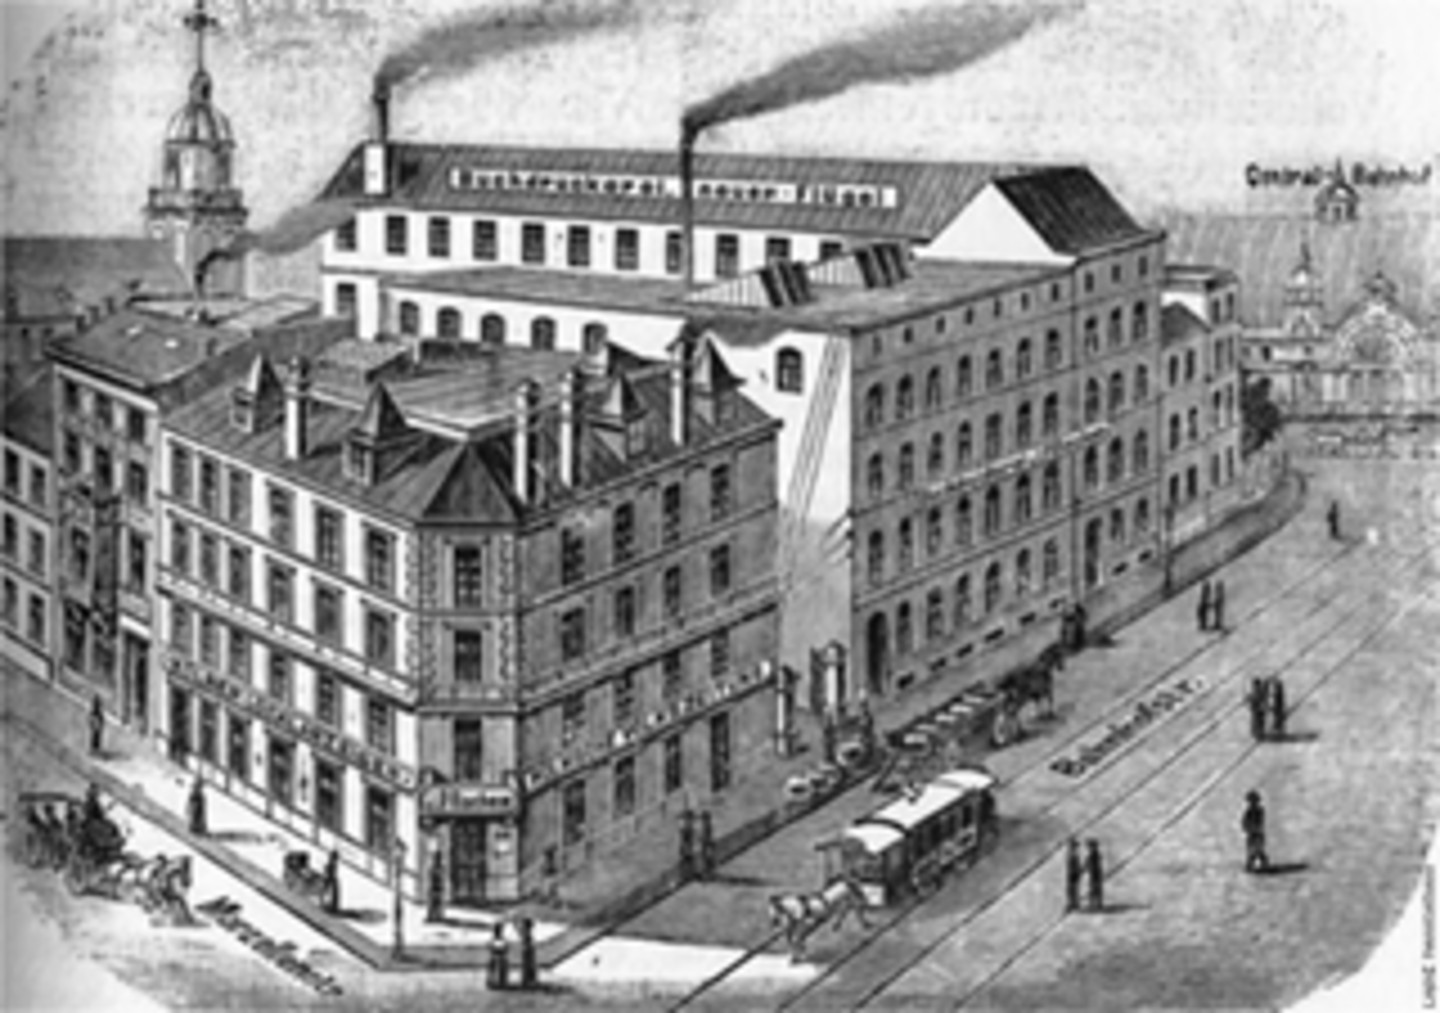 Eine historische Darstellung des Geschäftshaus und Buchdruckerei von 1889-1902. Das Gebäude befindet sich an einer Straße auf der sich einige Menschen befinden.